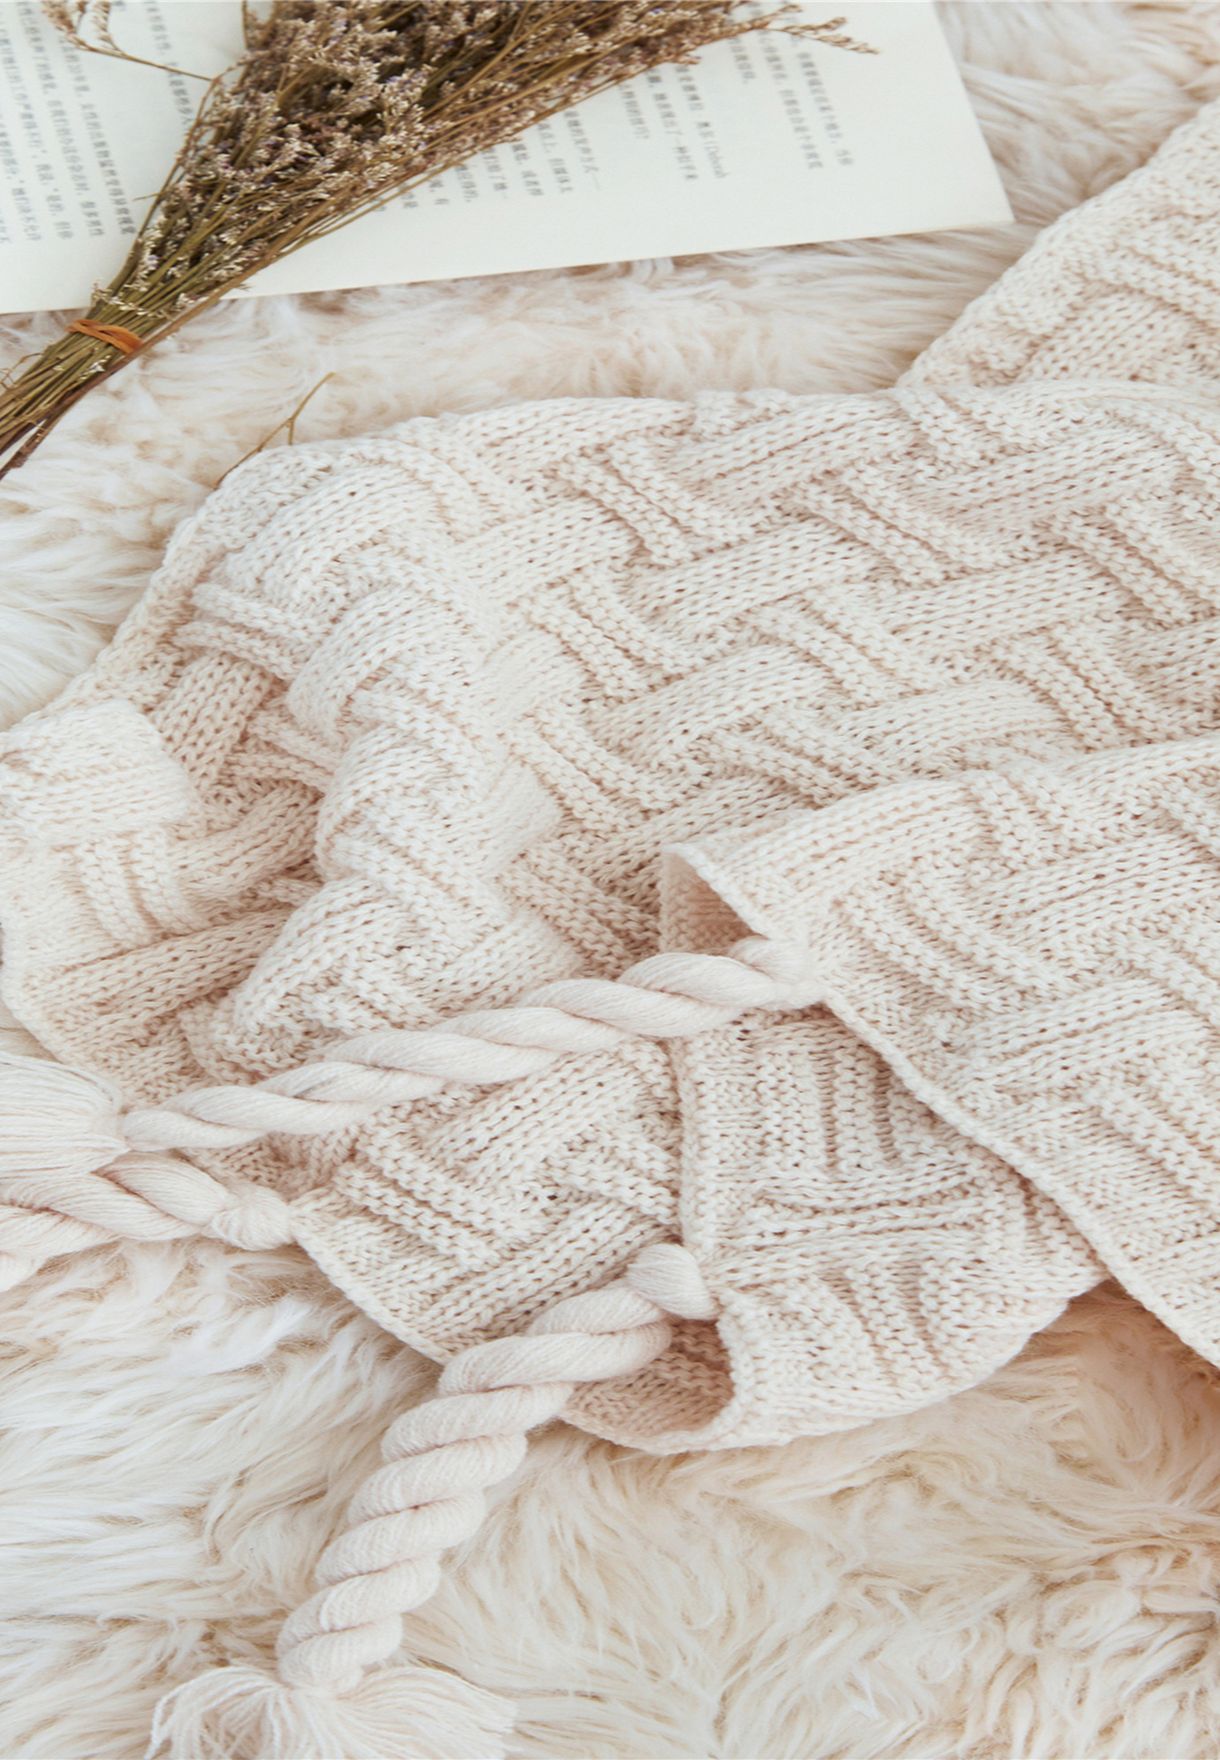 Knitted Tassel Blanket 130 X 160Cm